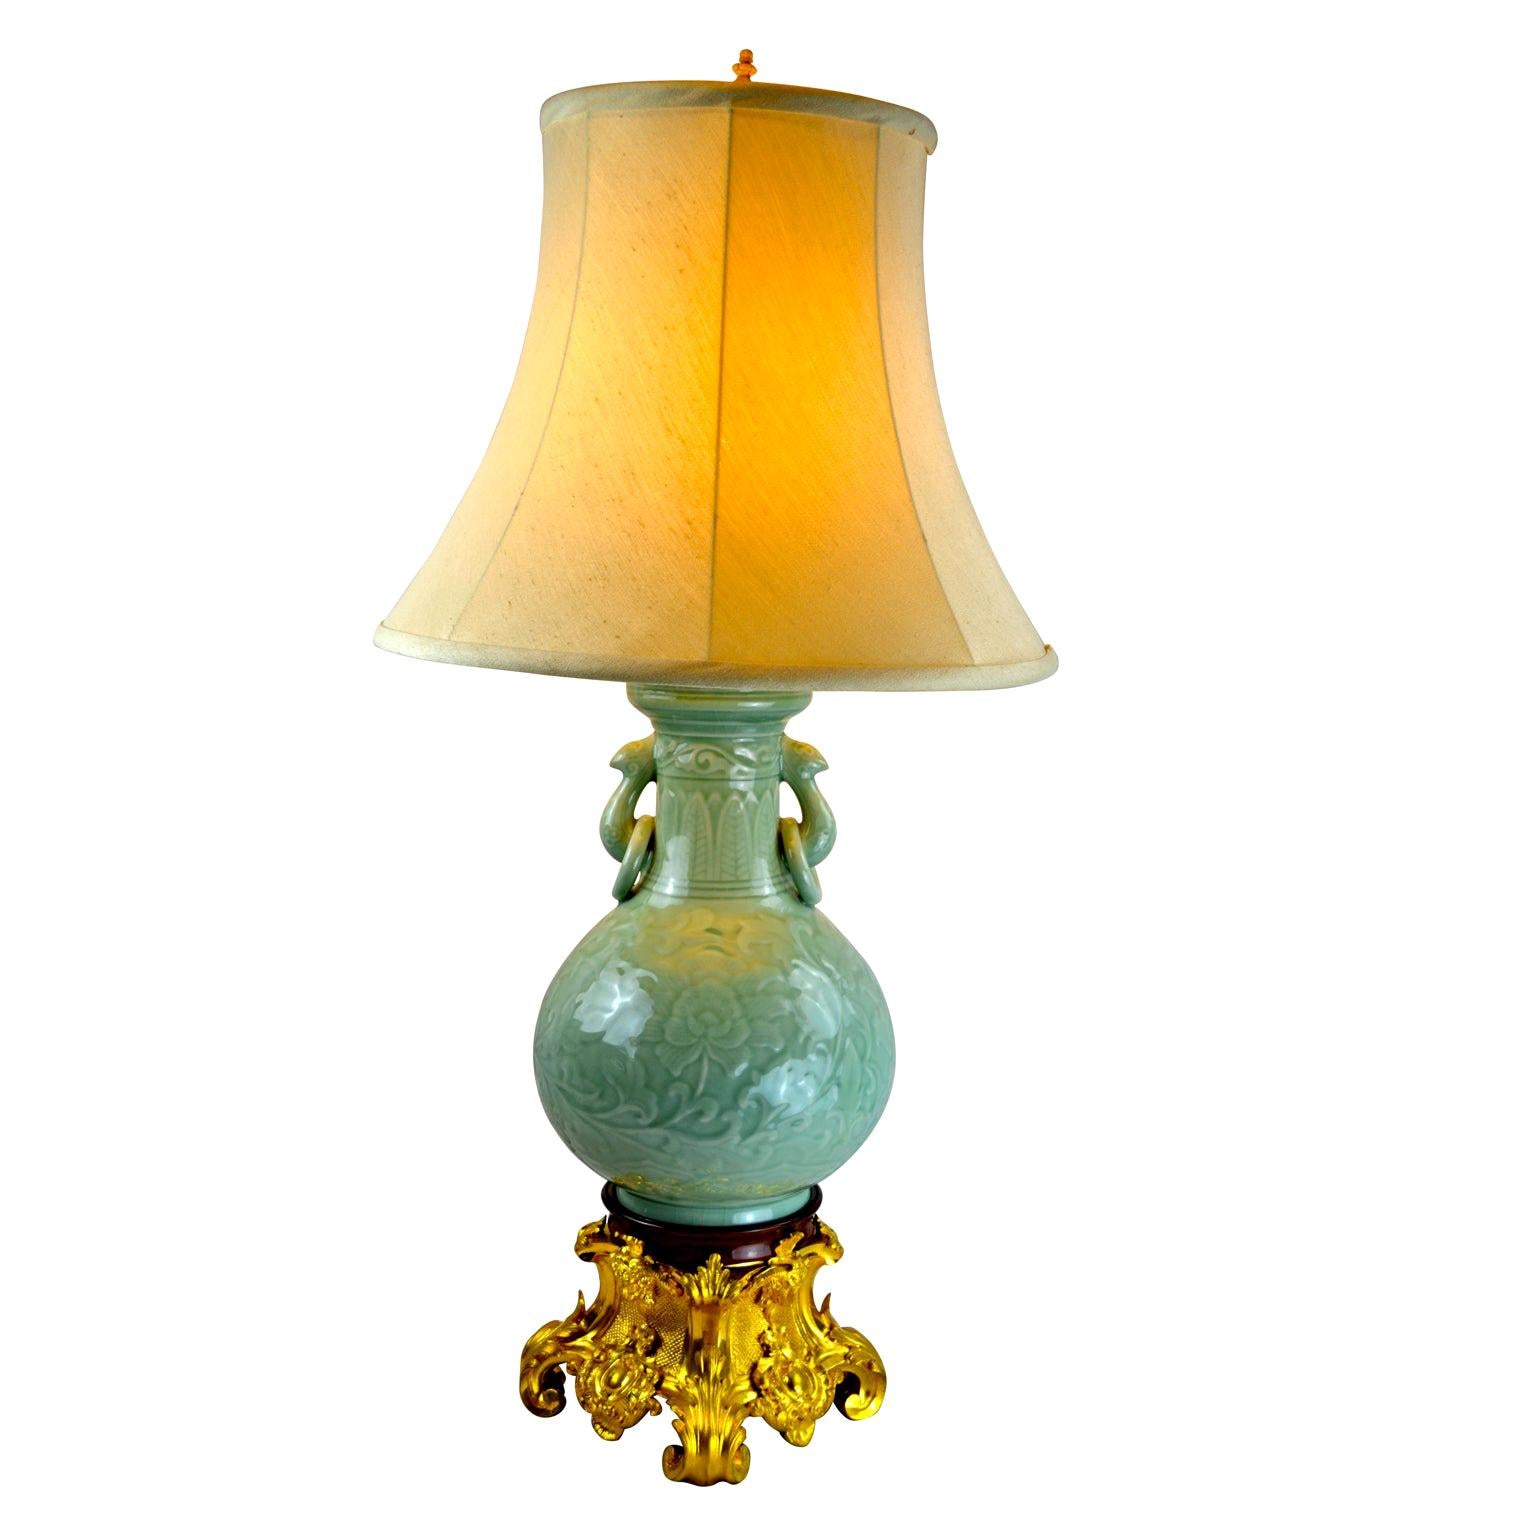 Chinesische Celadon-Vasenlampe mit französischem Sockel aus vergoldeter Bronze des 19.